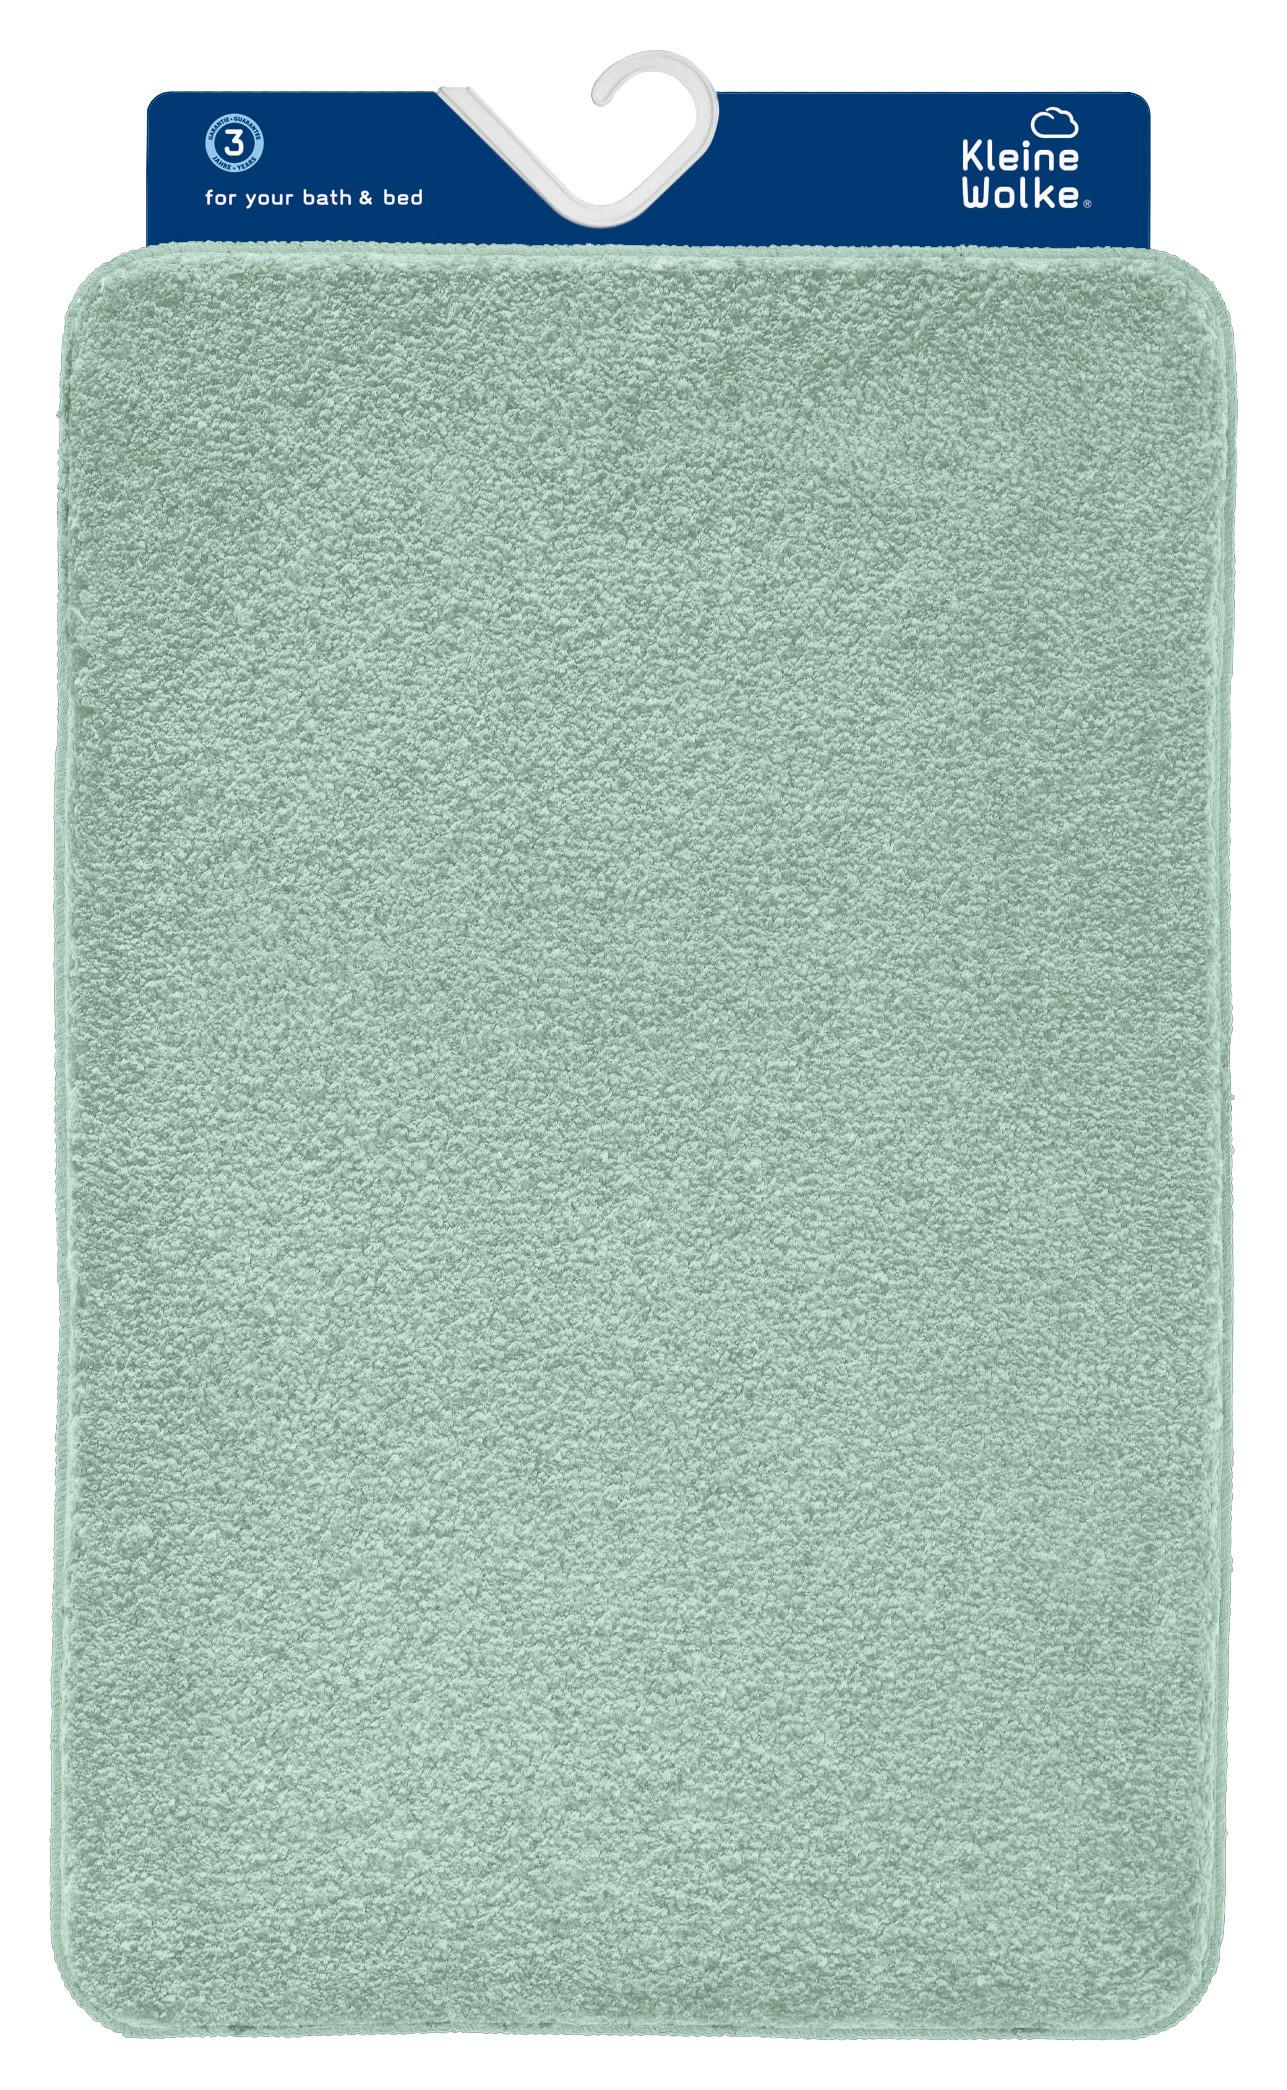 Badteppich Set Noble 85x55 cm Hellgrün Waschbar - Hellgrün, KONVENTIONELL, Textil (55x85/50x50cm) - Kleine Wolke